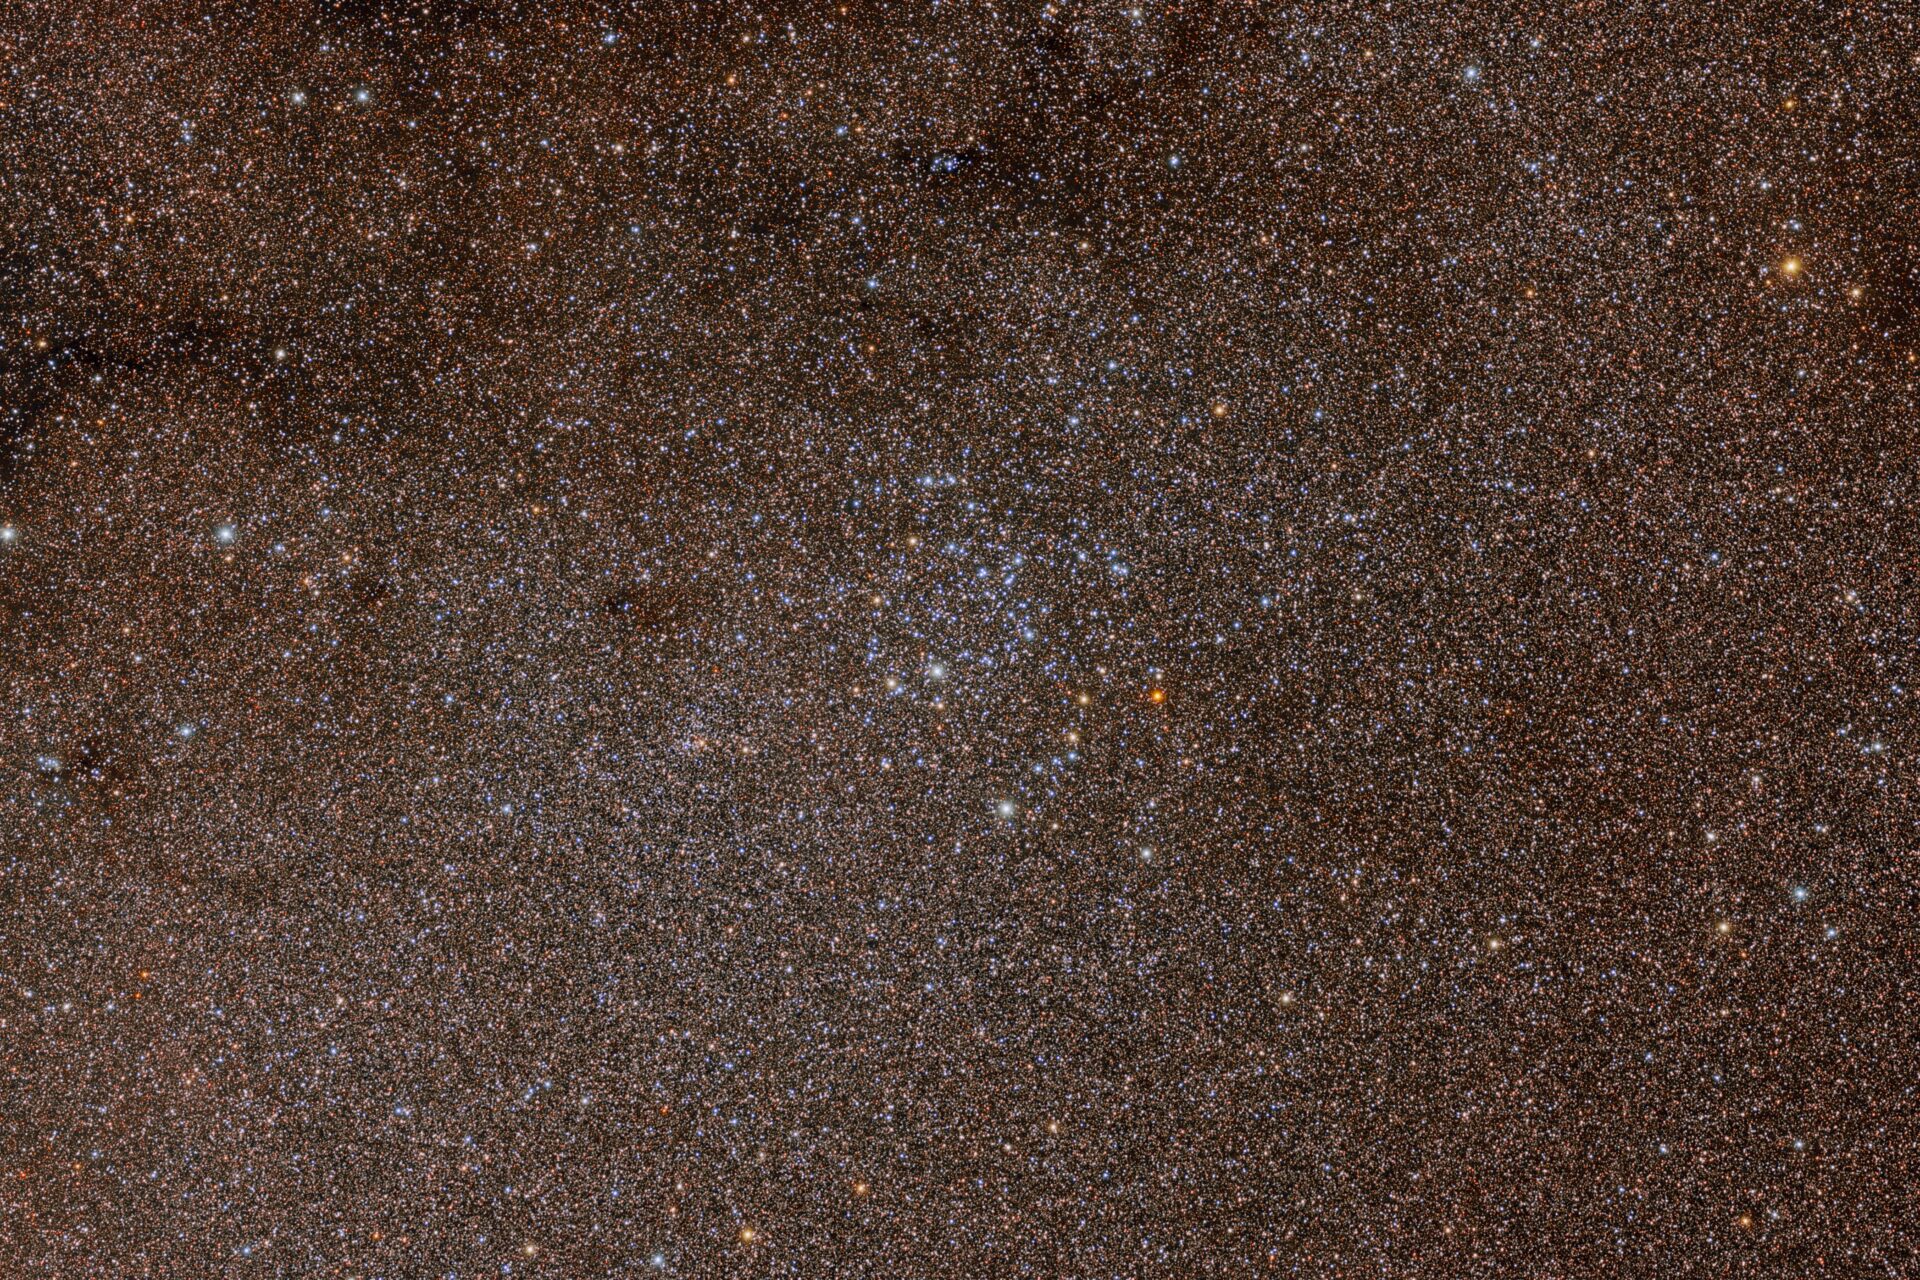 NGC 3114